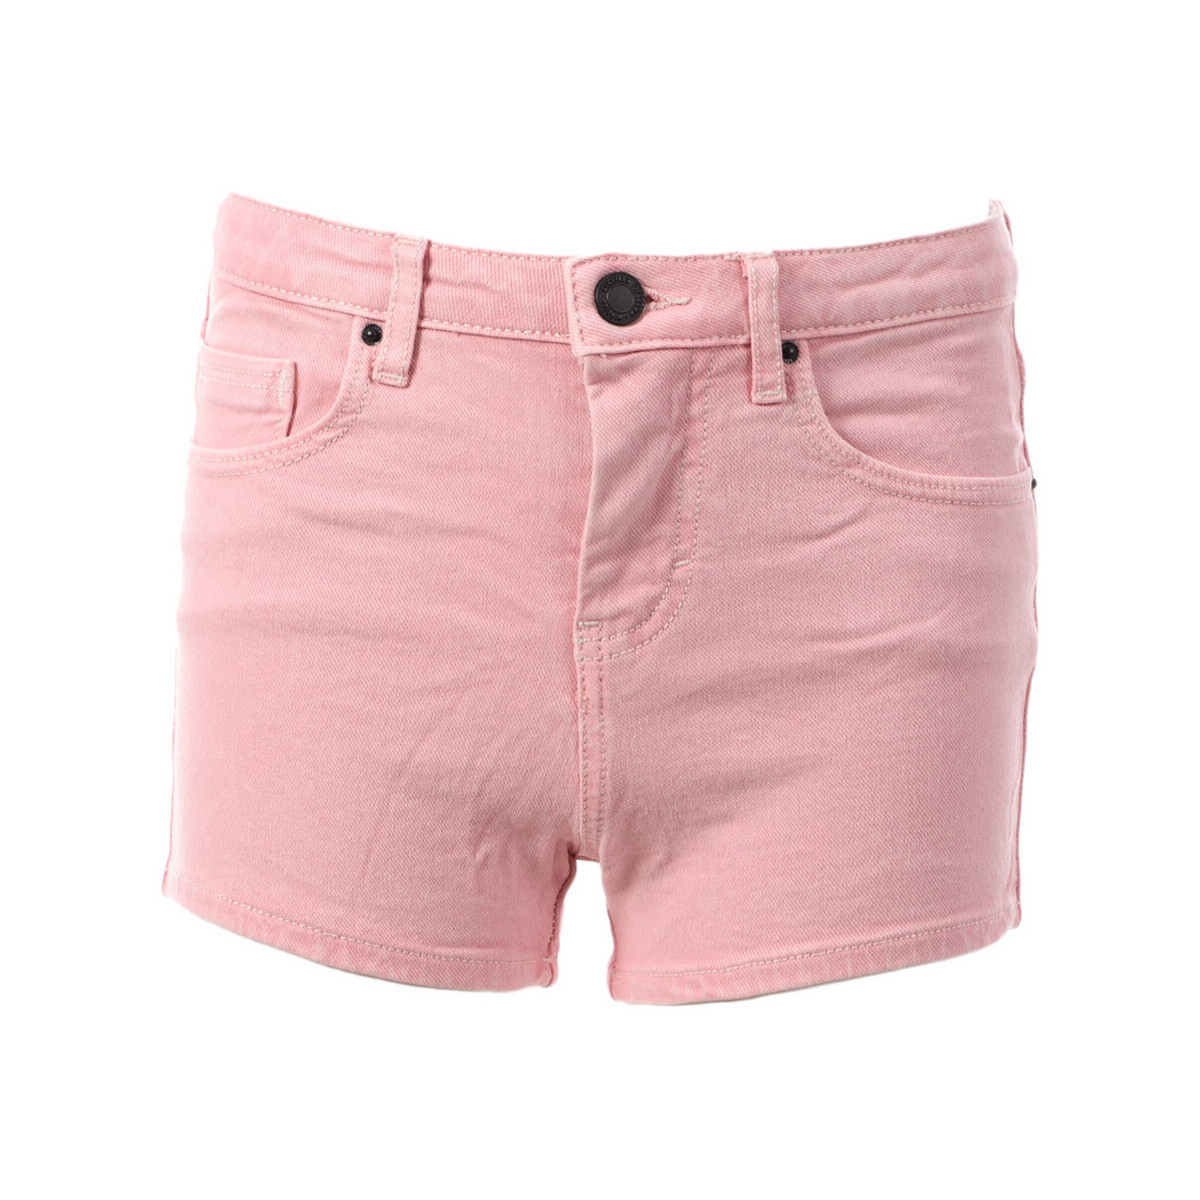 Vêtements Fille Shorts / Bermudas O'neill 1A7572-4076 Rose